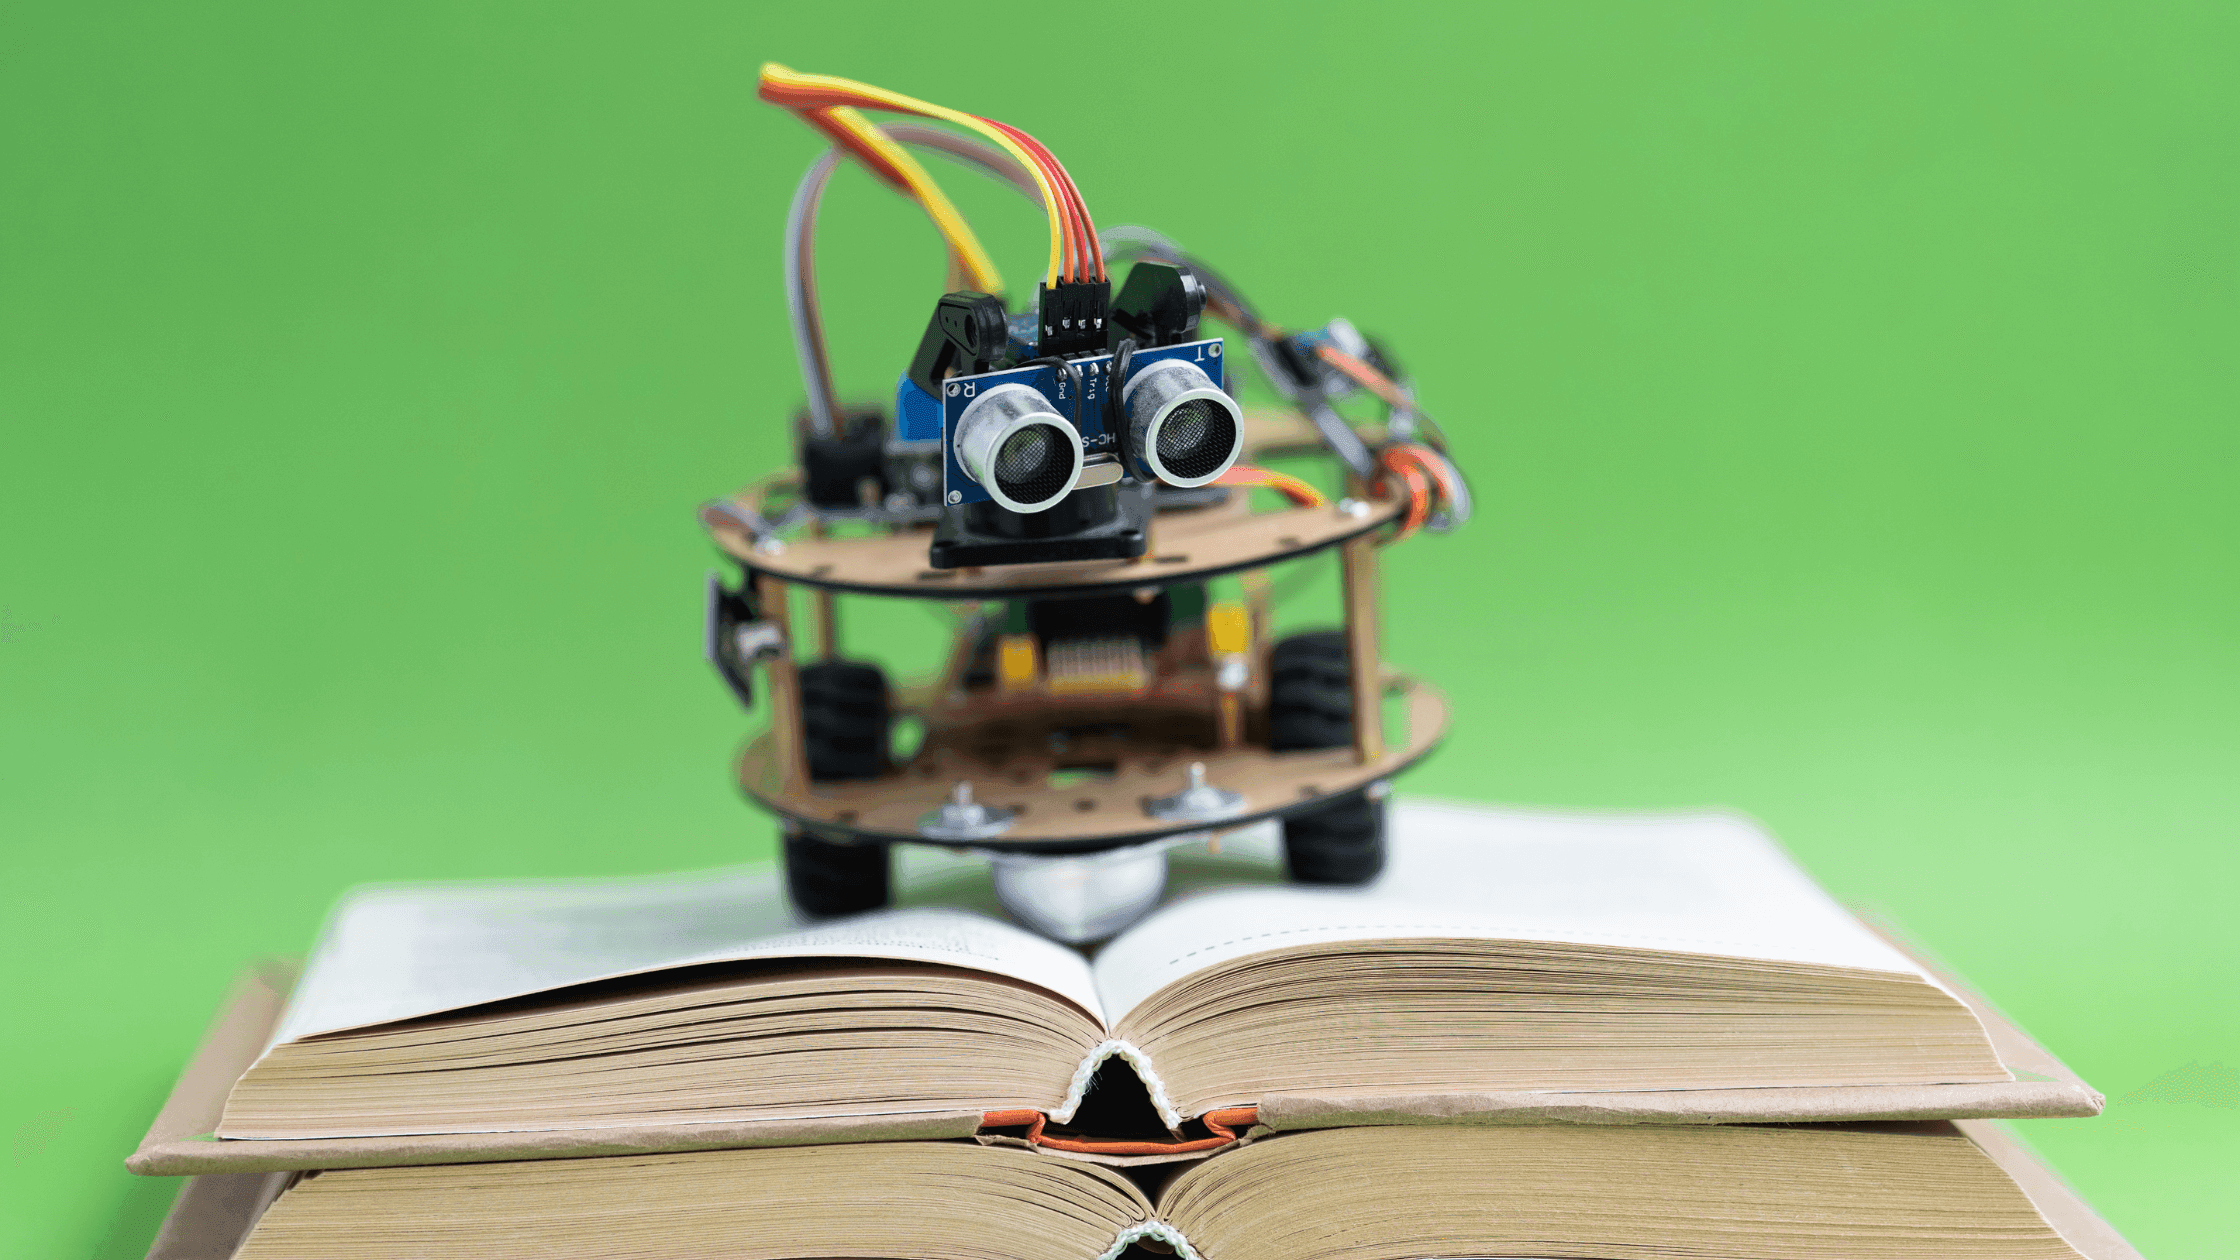 Robot hecho con Arduino sobre un libro